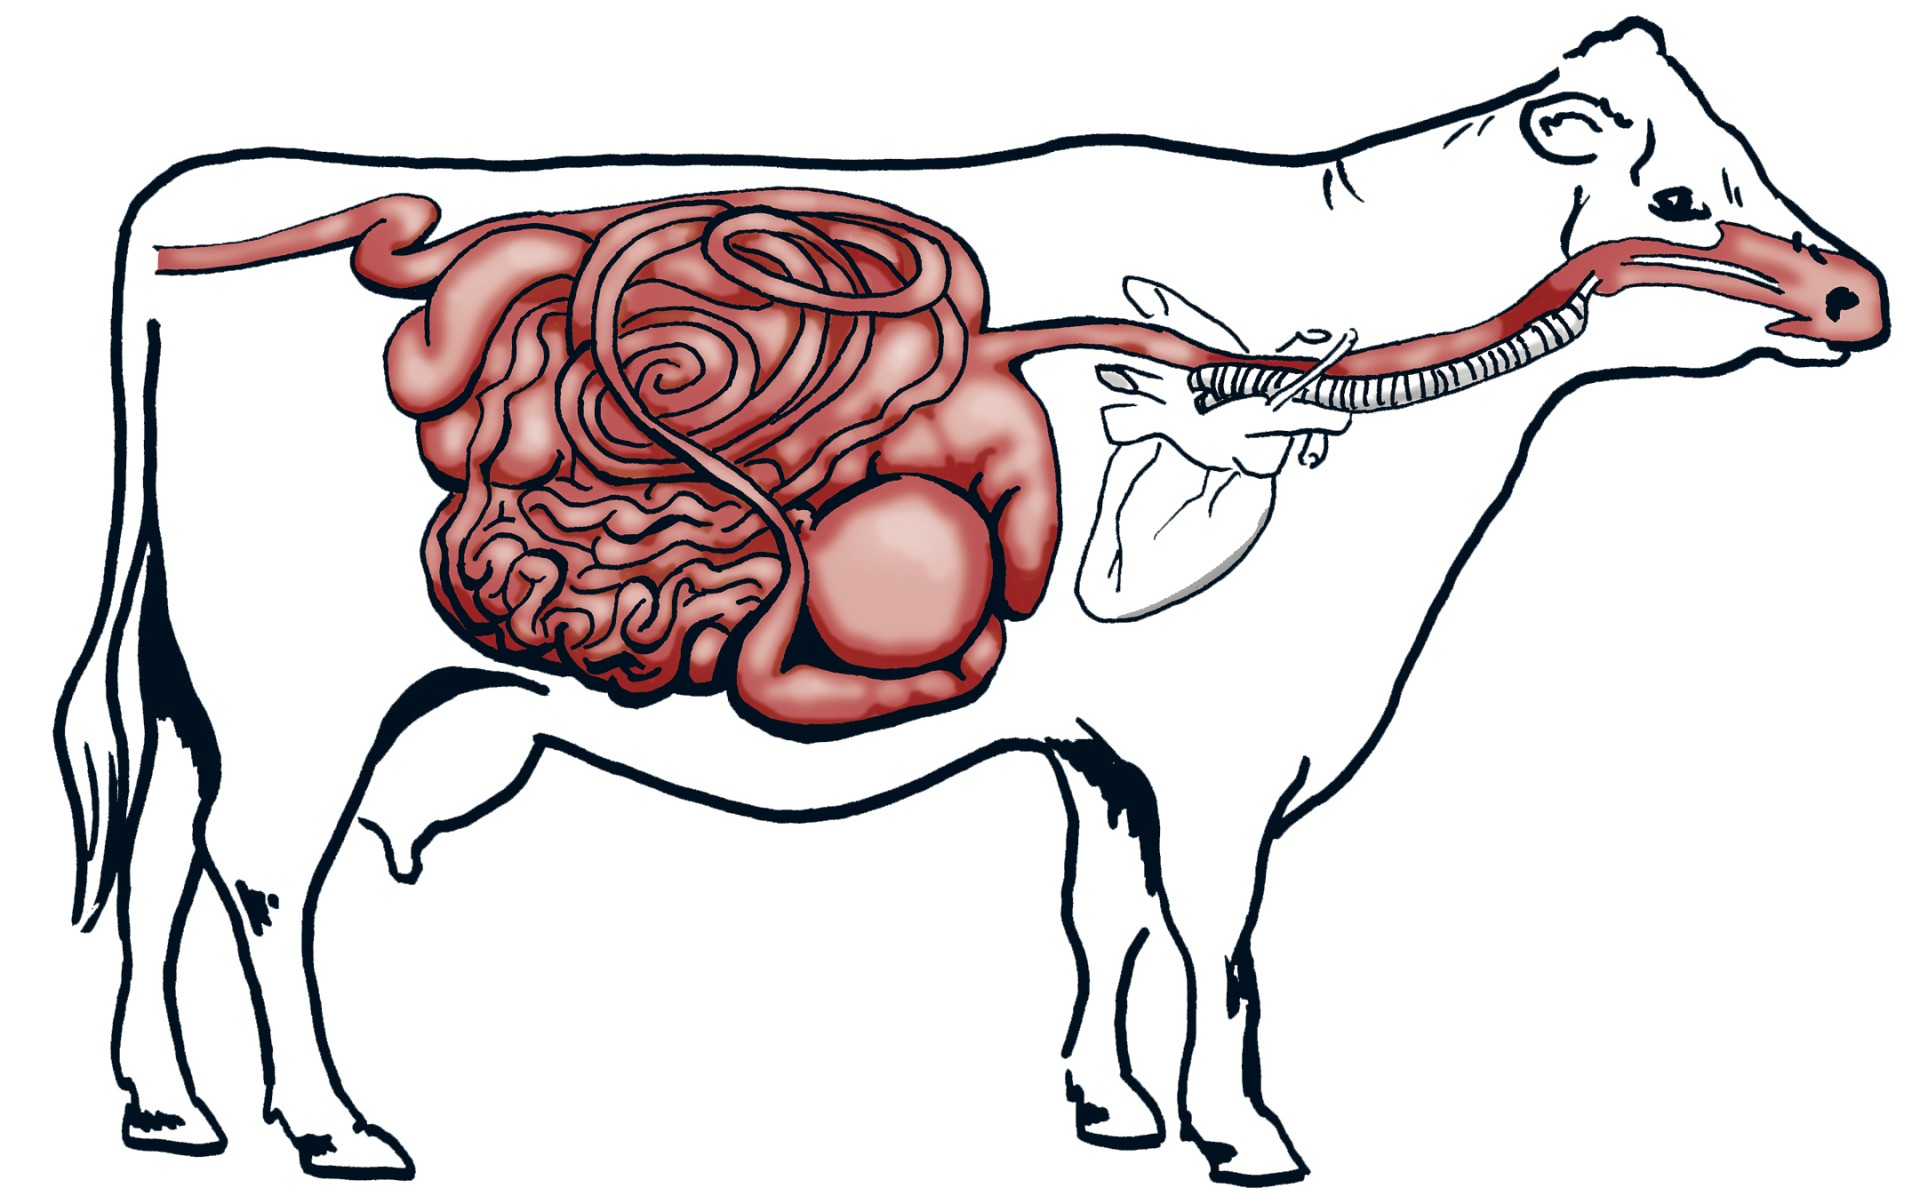 Система пищеварения коровы